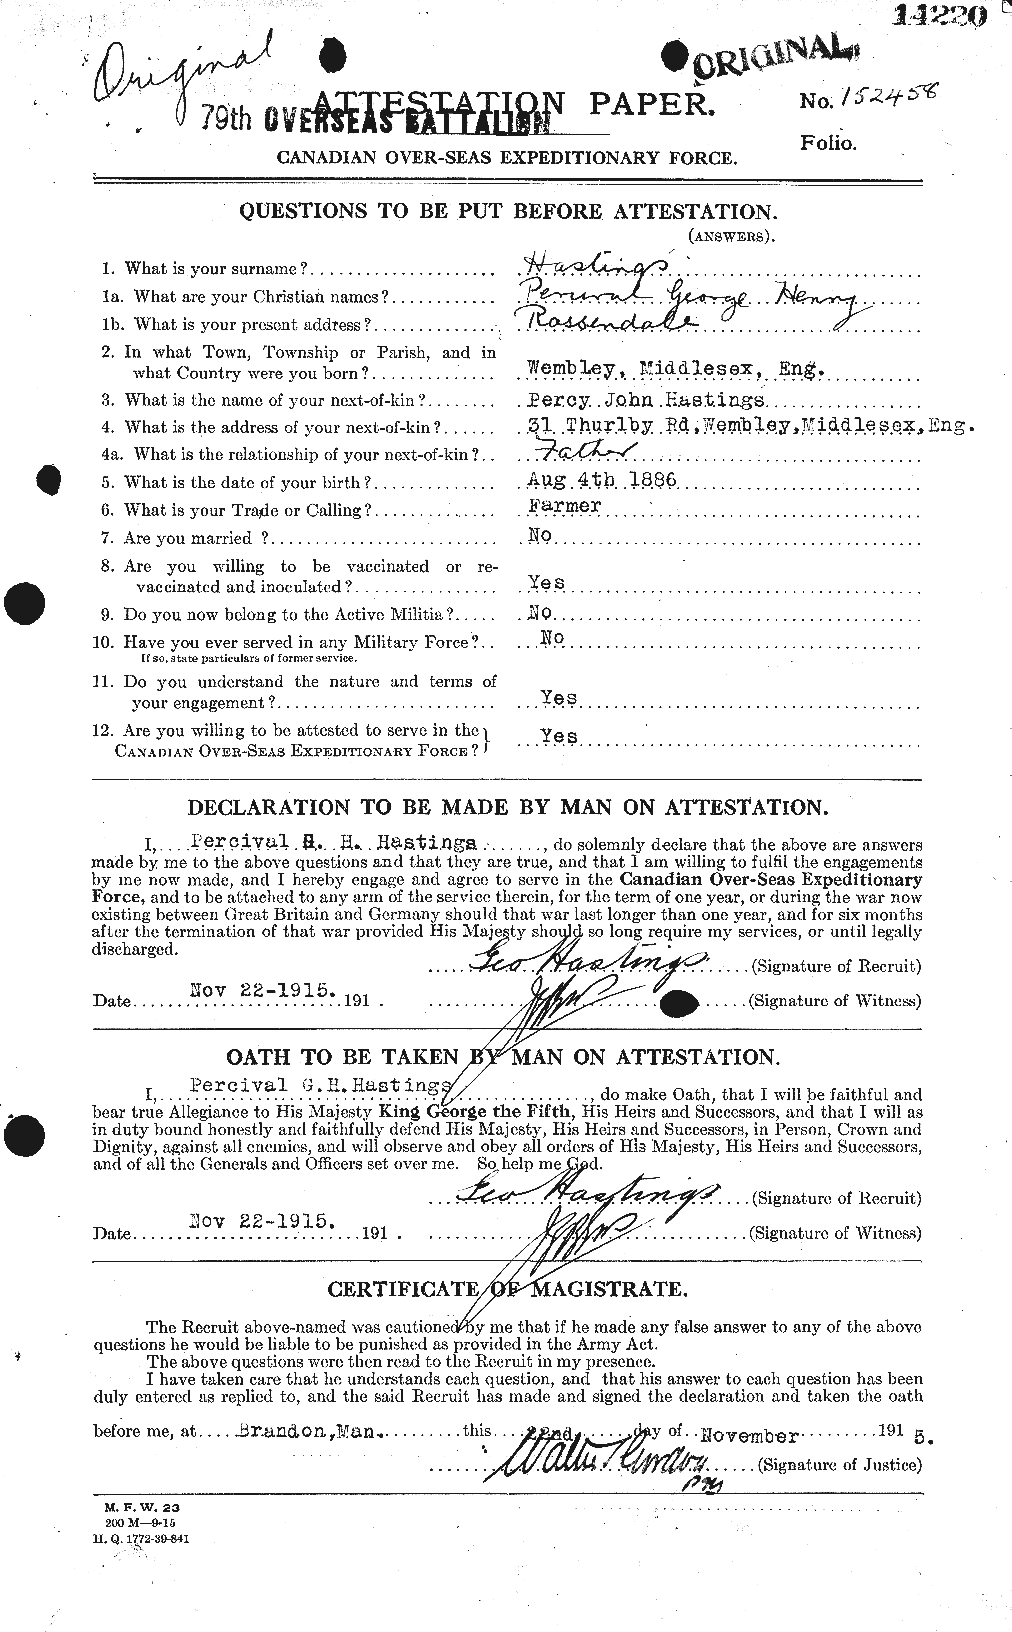 Dossiers du Personnel de la Première Guerre mondiale - CEC 388239a